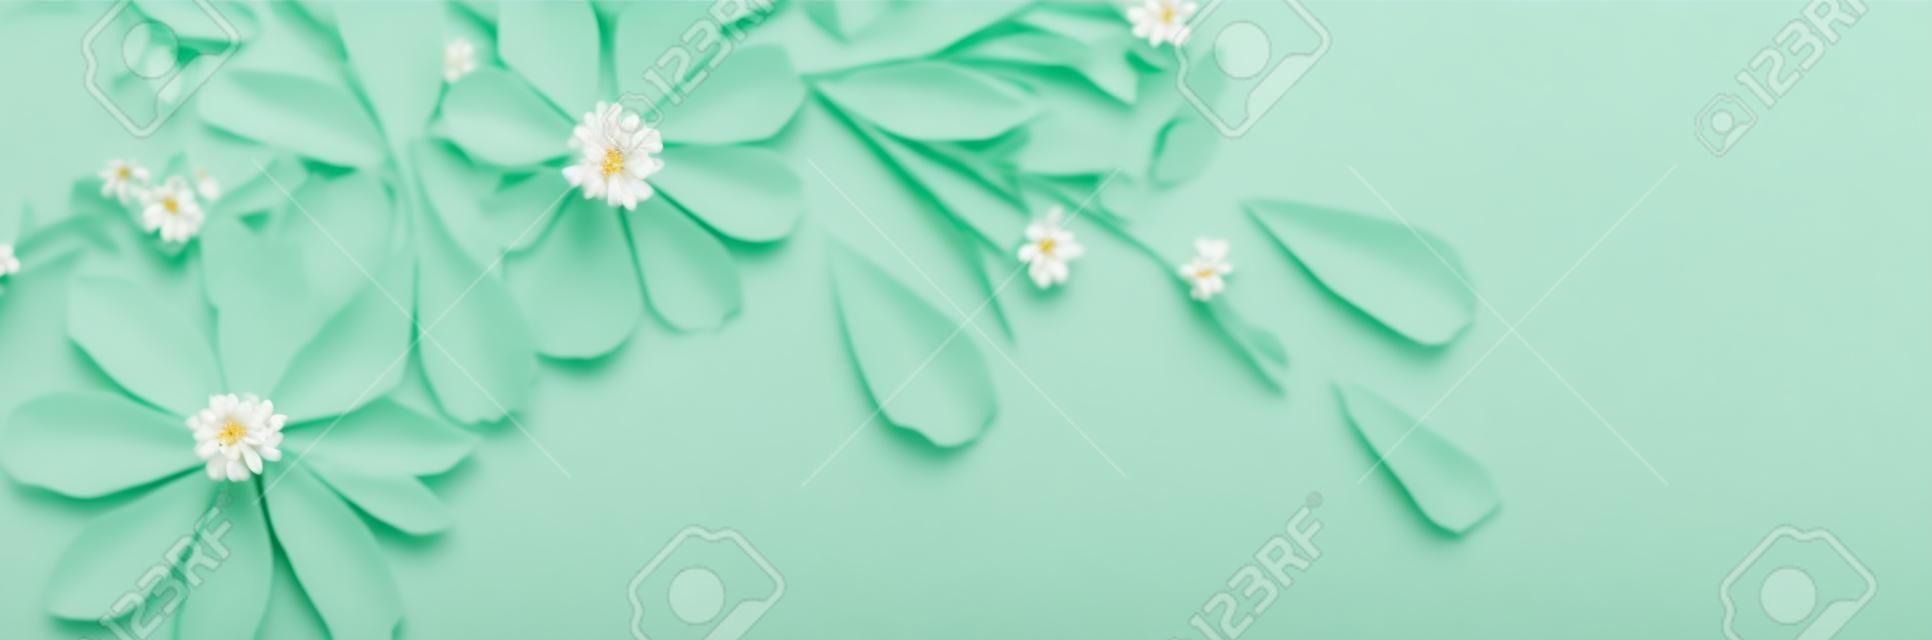 weiße Blumen auf grünem Papierhintergrund